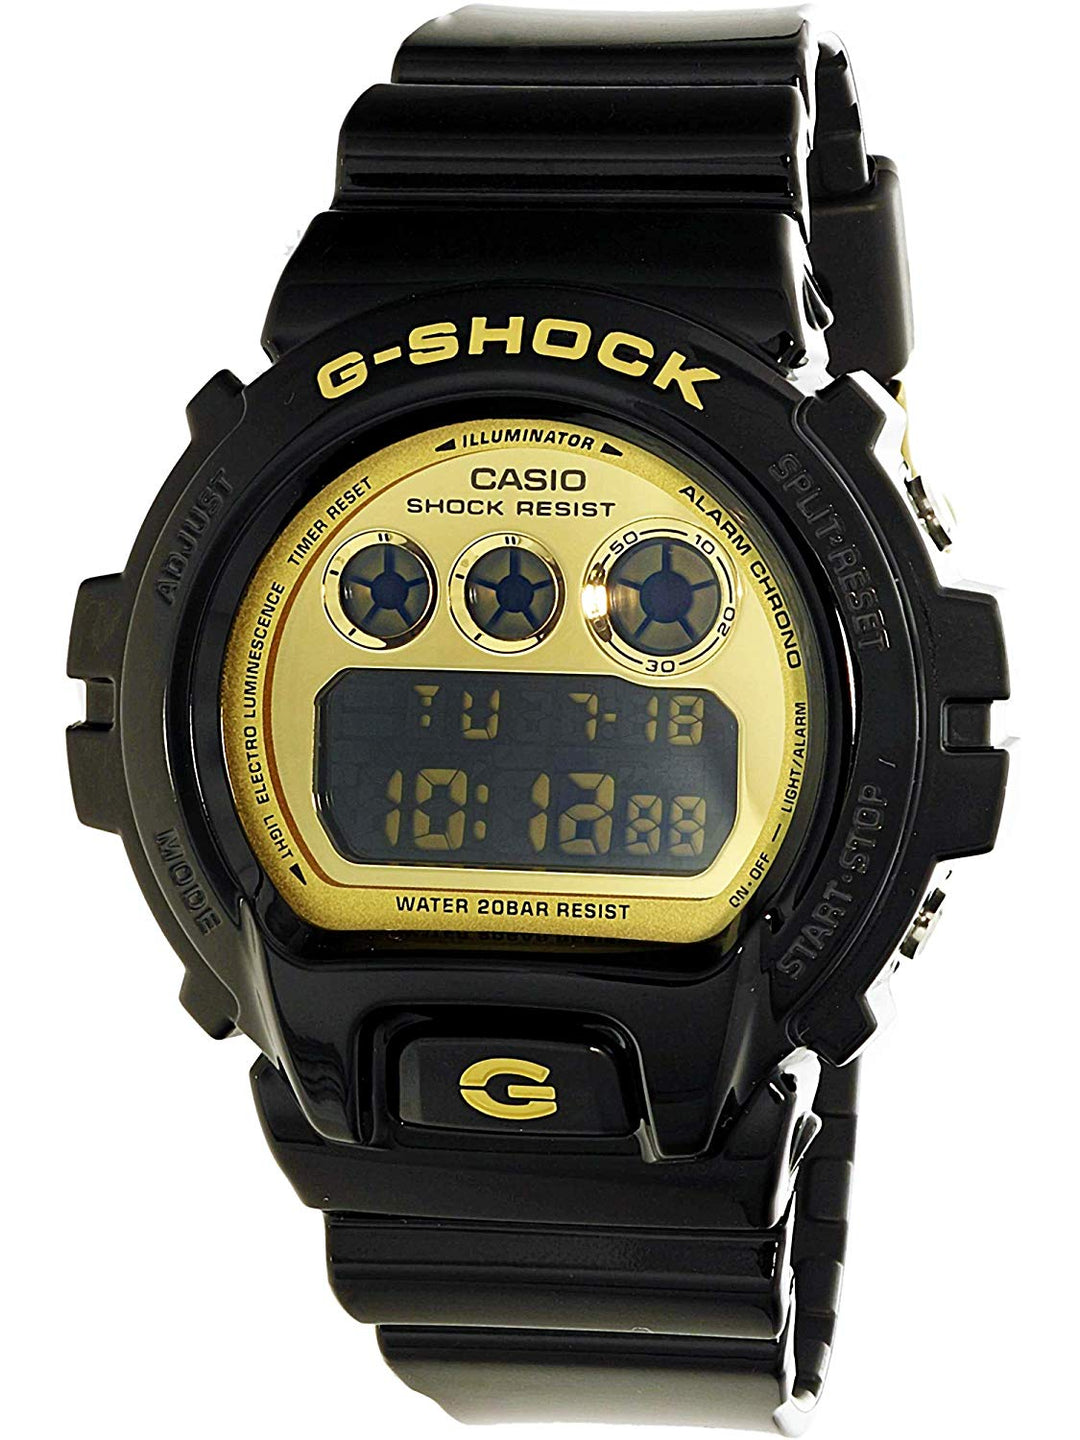 Casio G-shock watch DW-6900CB-1DS